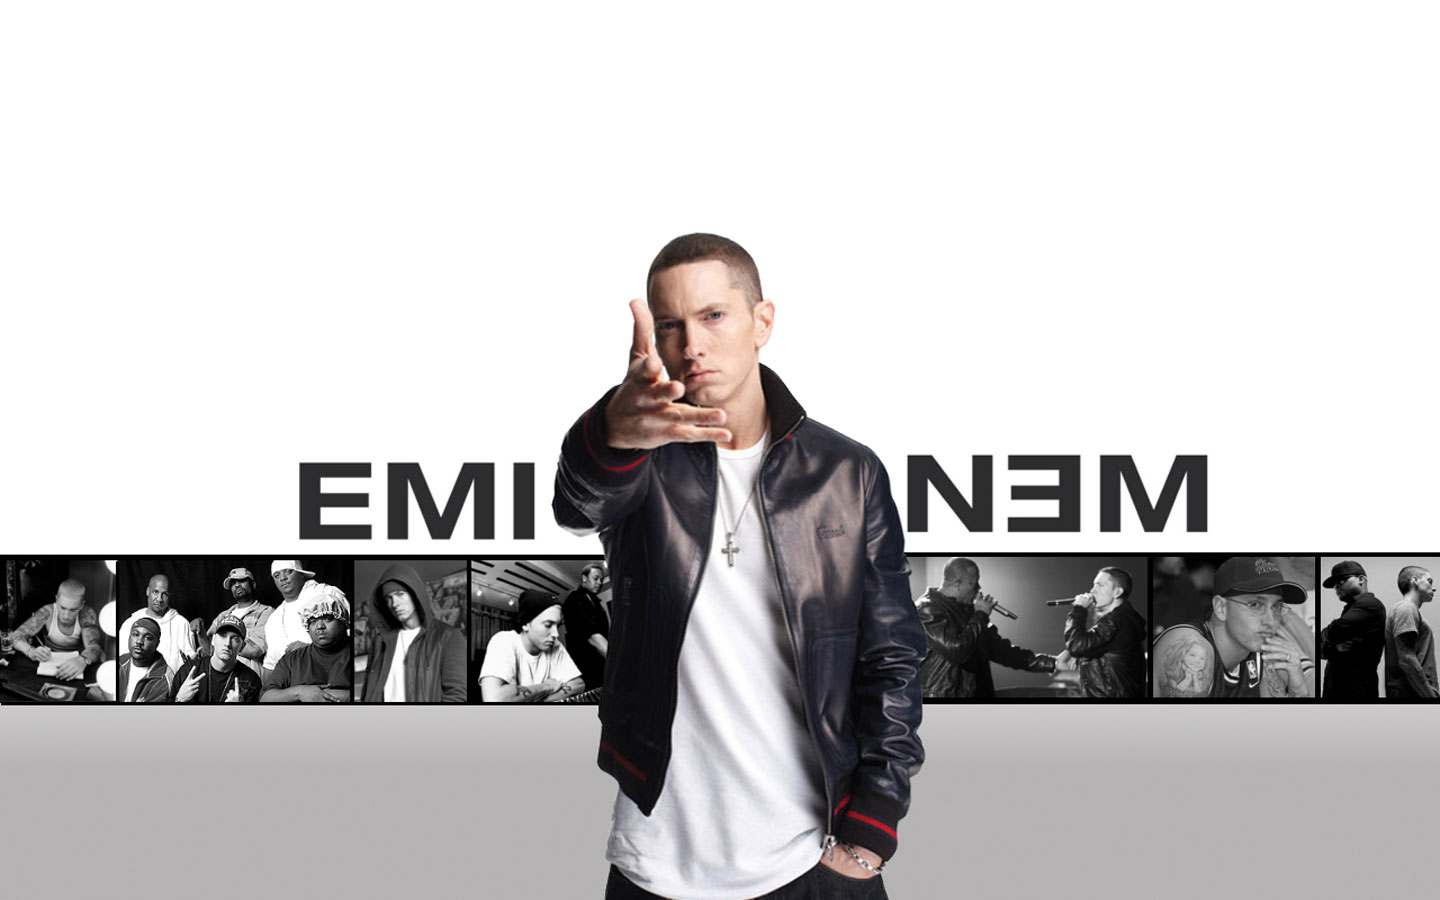 Miễn phí tải về hình nền Eminem cho máy tính [1440x900] để thể hiện tình yêu với nhạc rap của bạn. Với độ phân giải gần 2 triệu điểm ảnh, hình nền sẽ giữ nguyên độ sắc nét và rõ ràng, giúp bạn hiển thị tốt nhất hình ảnh thần tượng mình đang ủng hộ. 